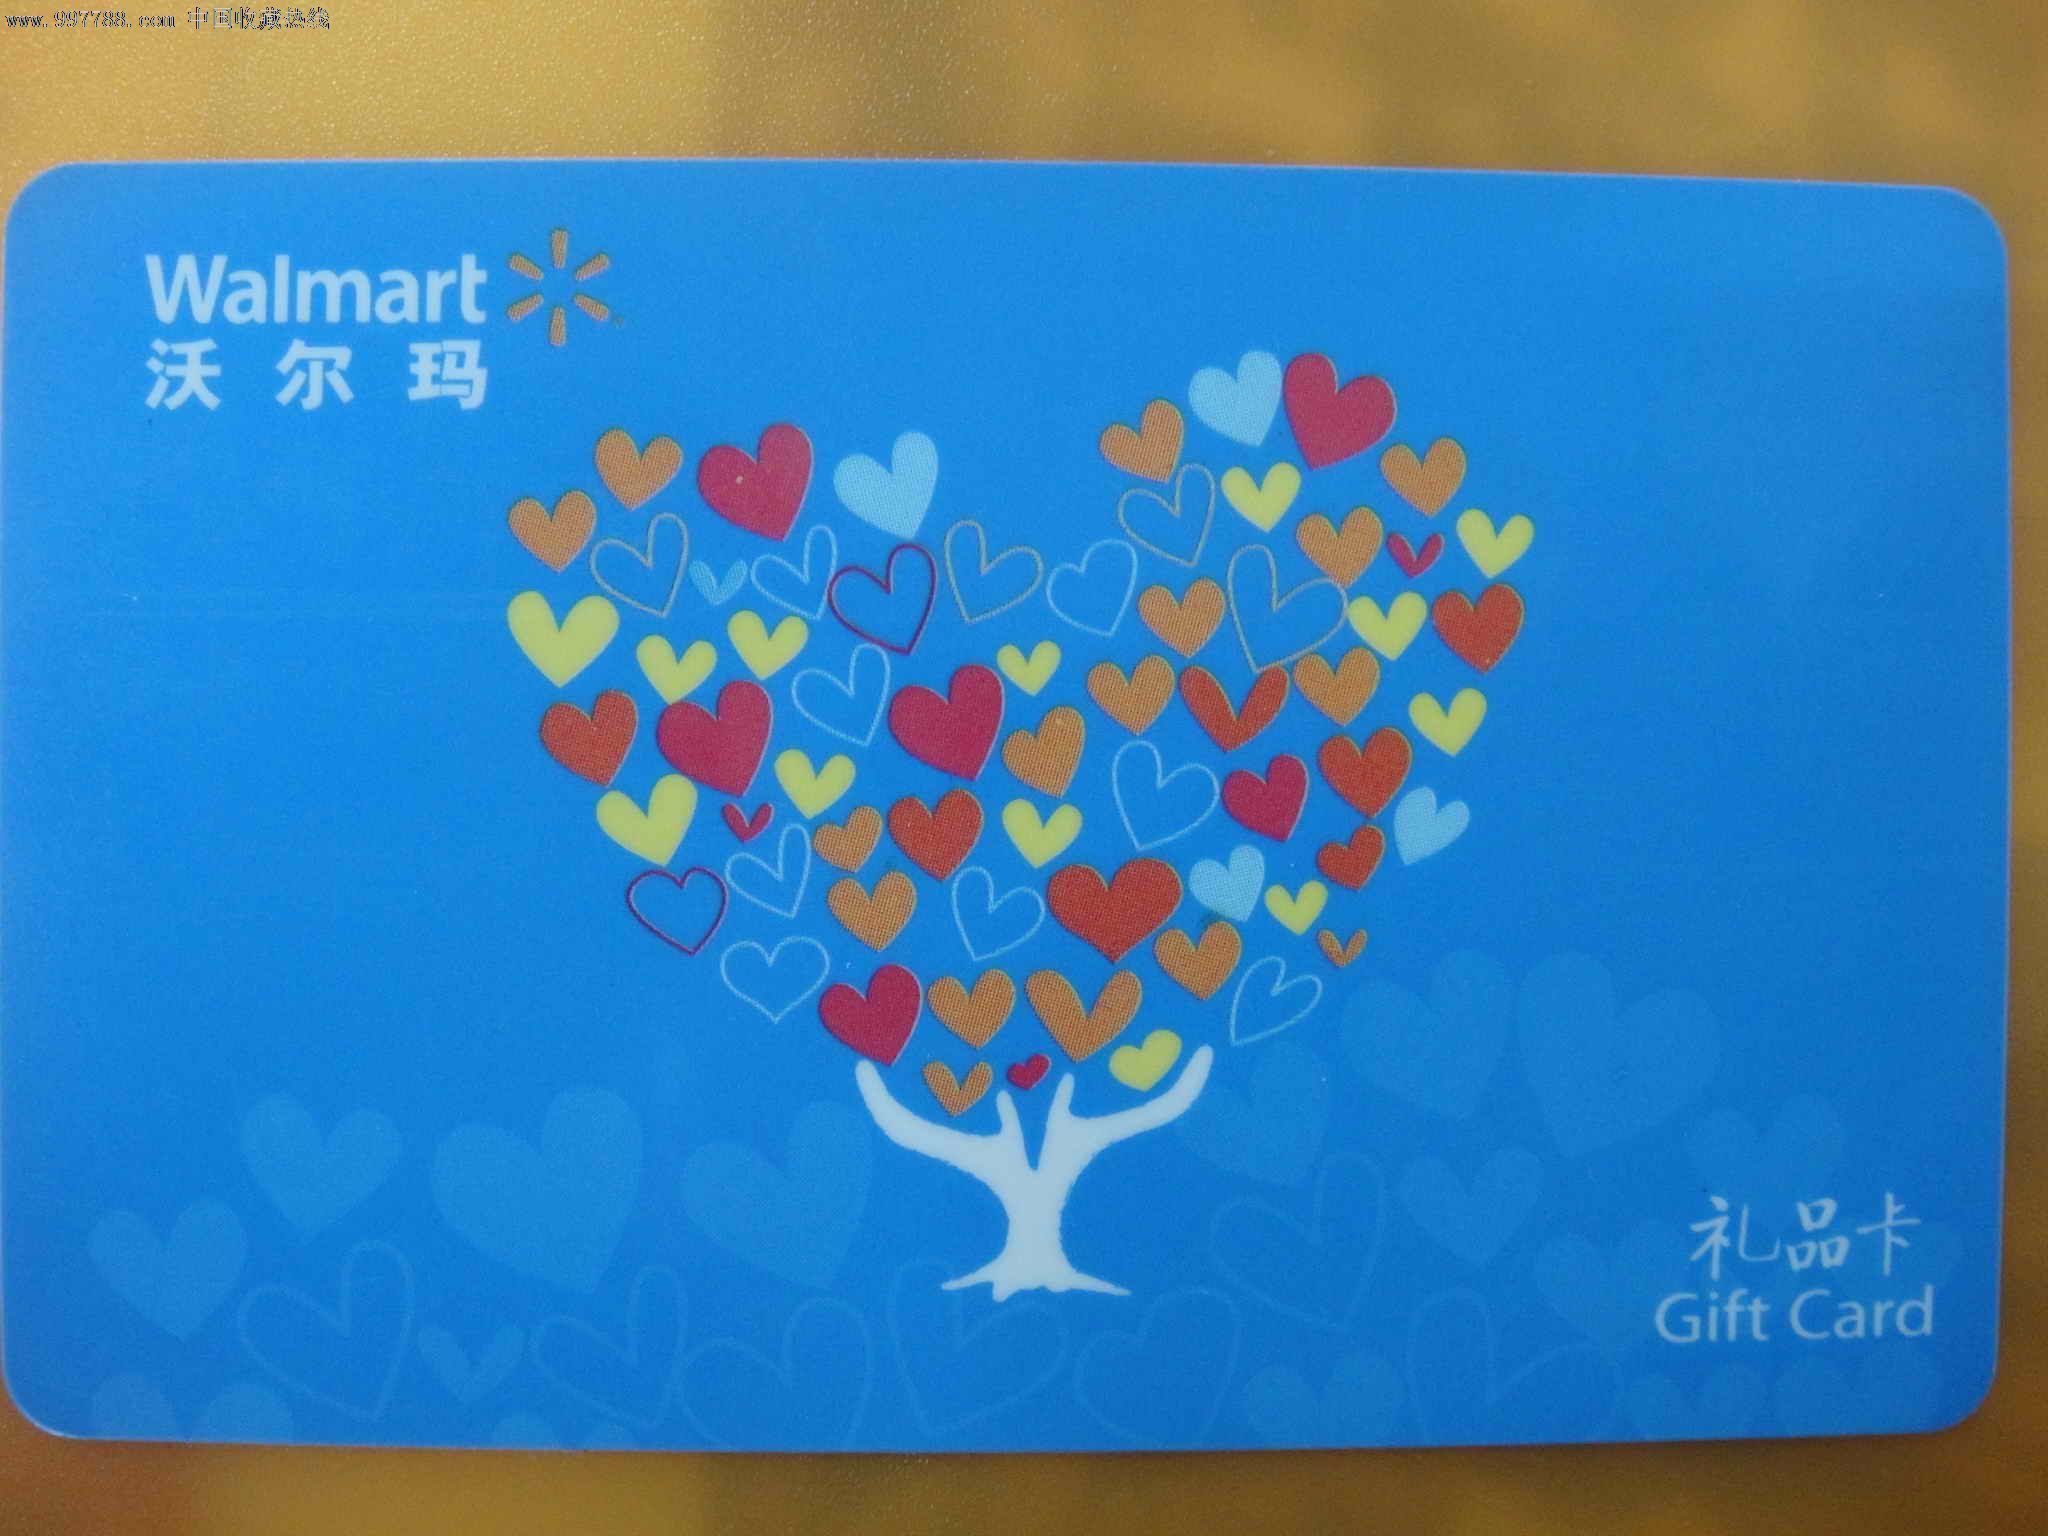 沃尔玛心形树礼品卡购物卡-价格:1元-se15107753-其他杂项卡-零售-中国收藏热线